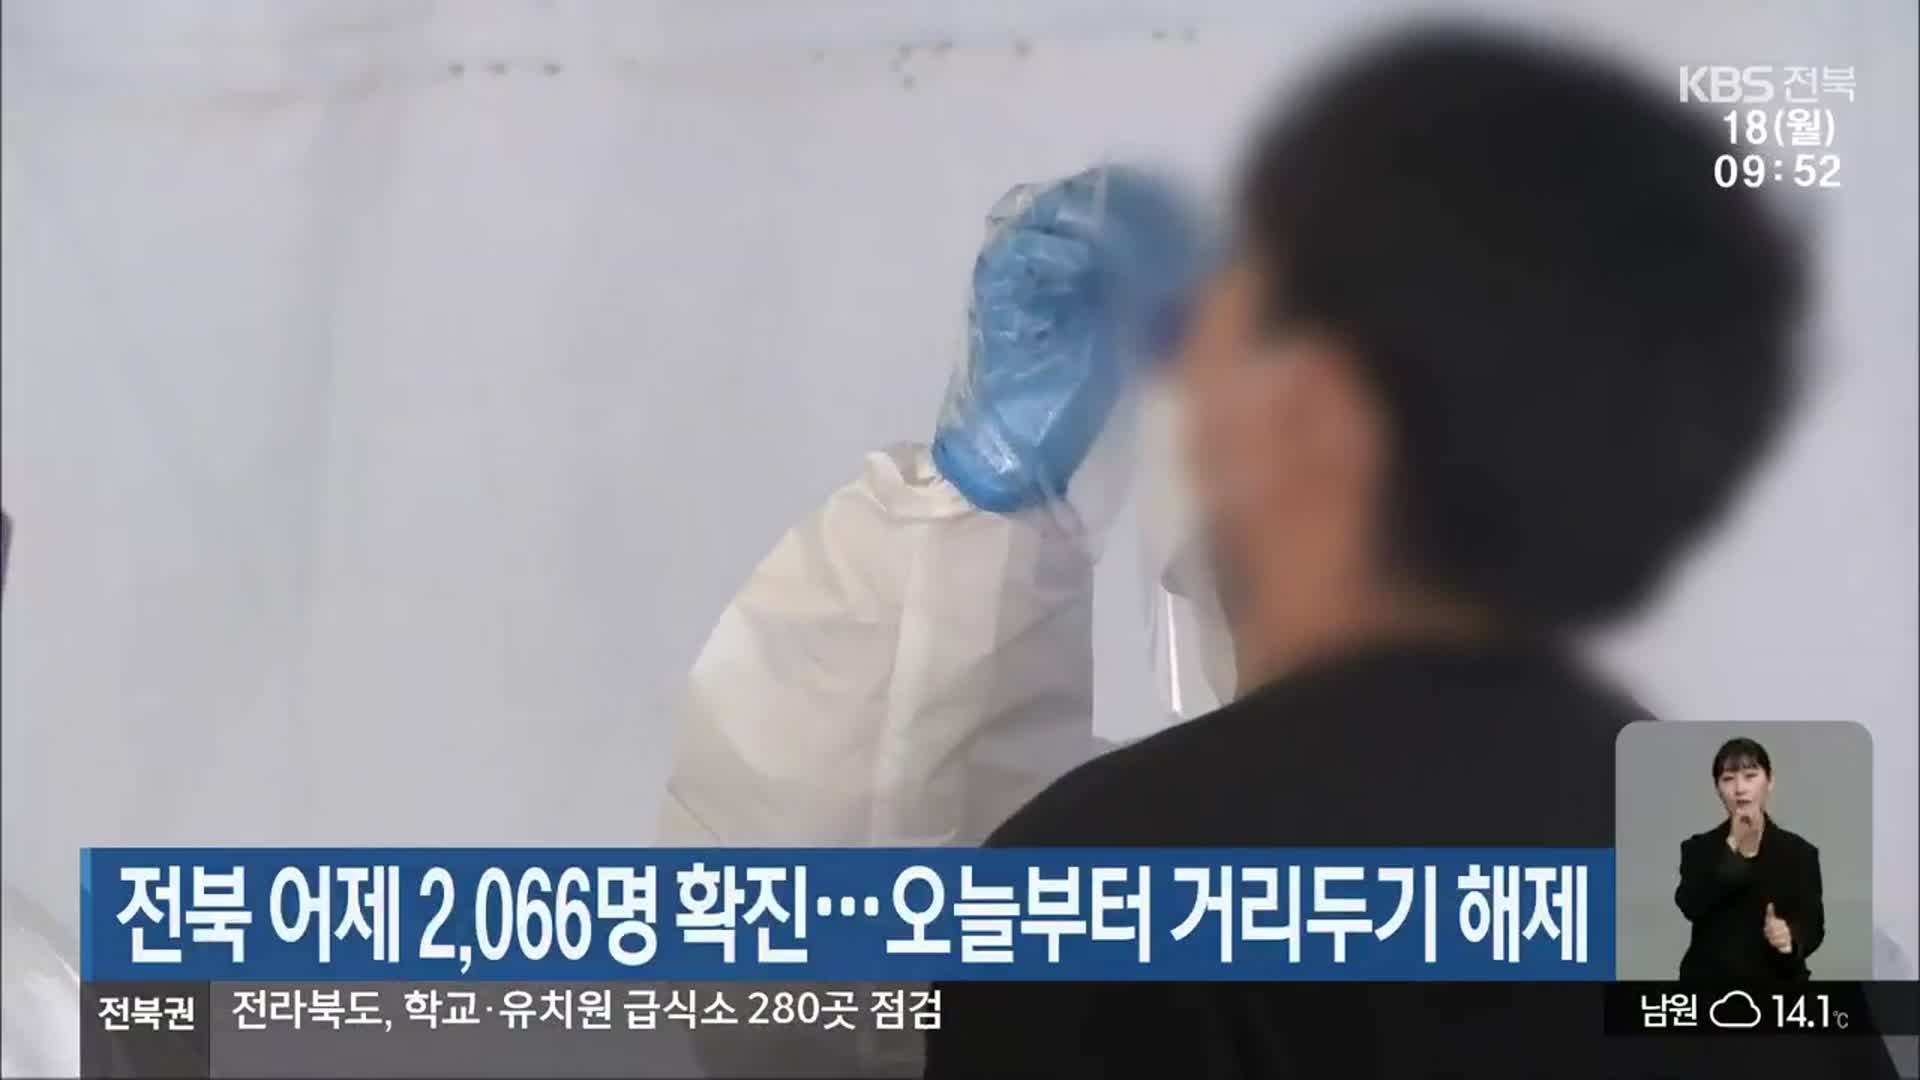 전북 어제 2,066명 확진…오늘부터 거리두기 해제